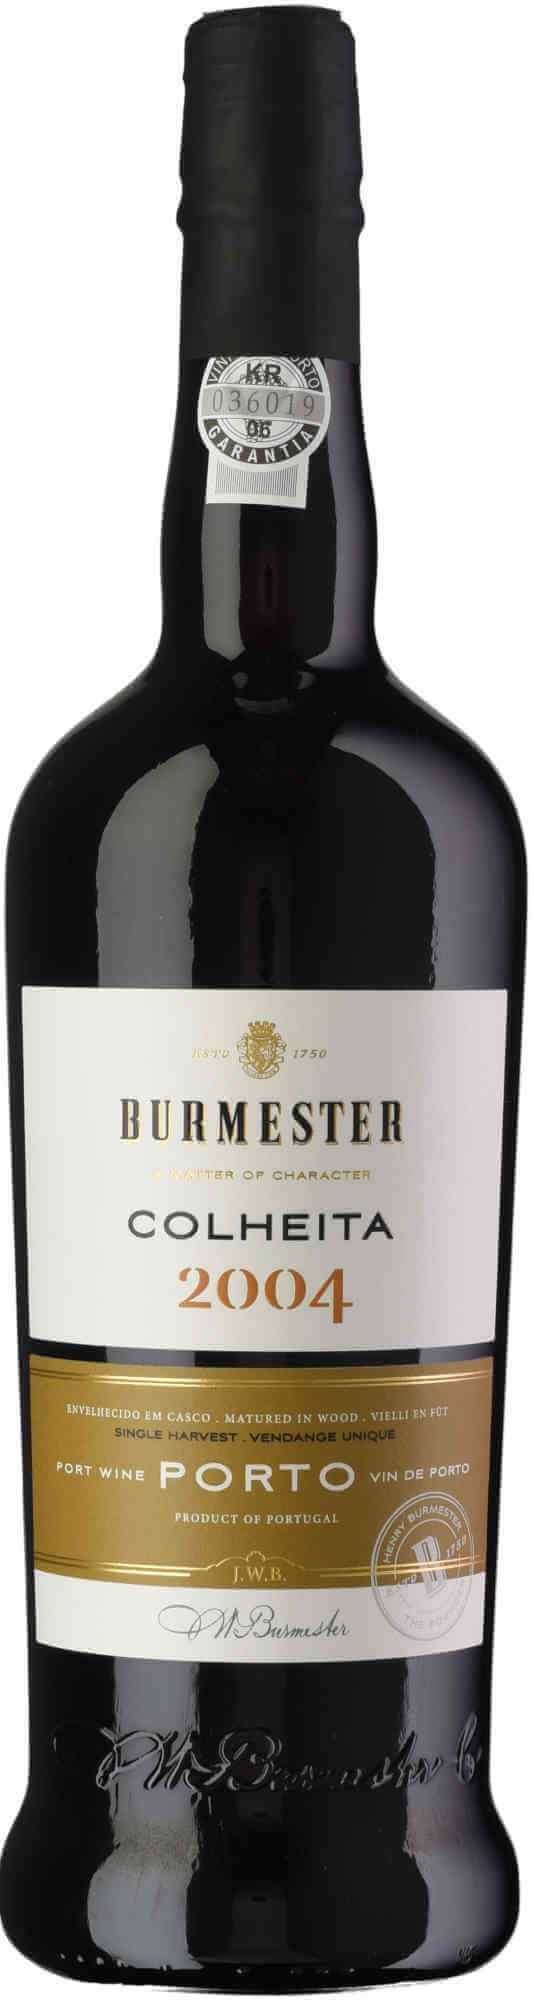 Burmester-Colheita-2004-Port